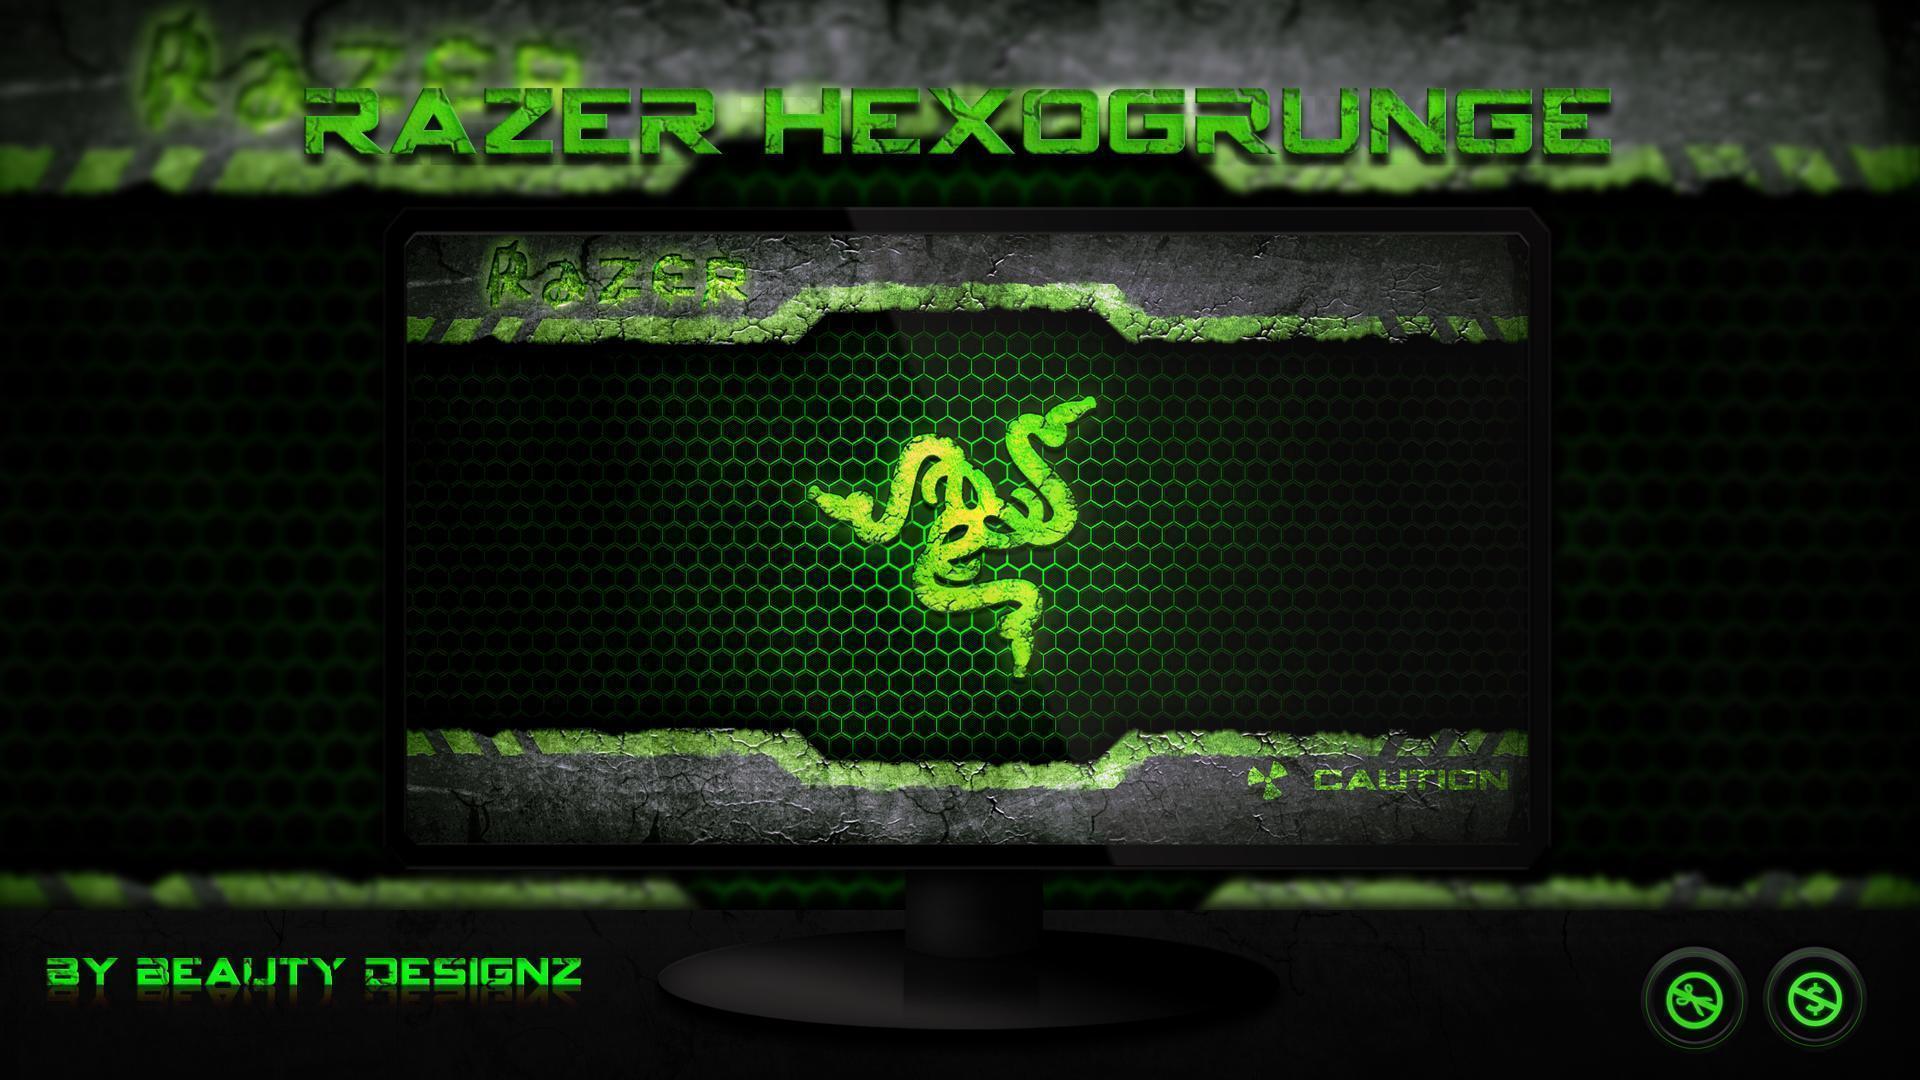 Razer HexoGrunge Wallpaper